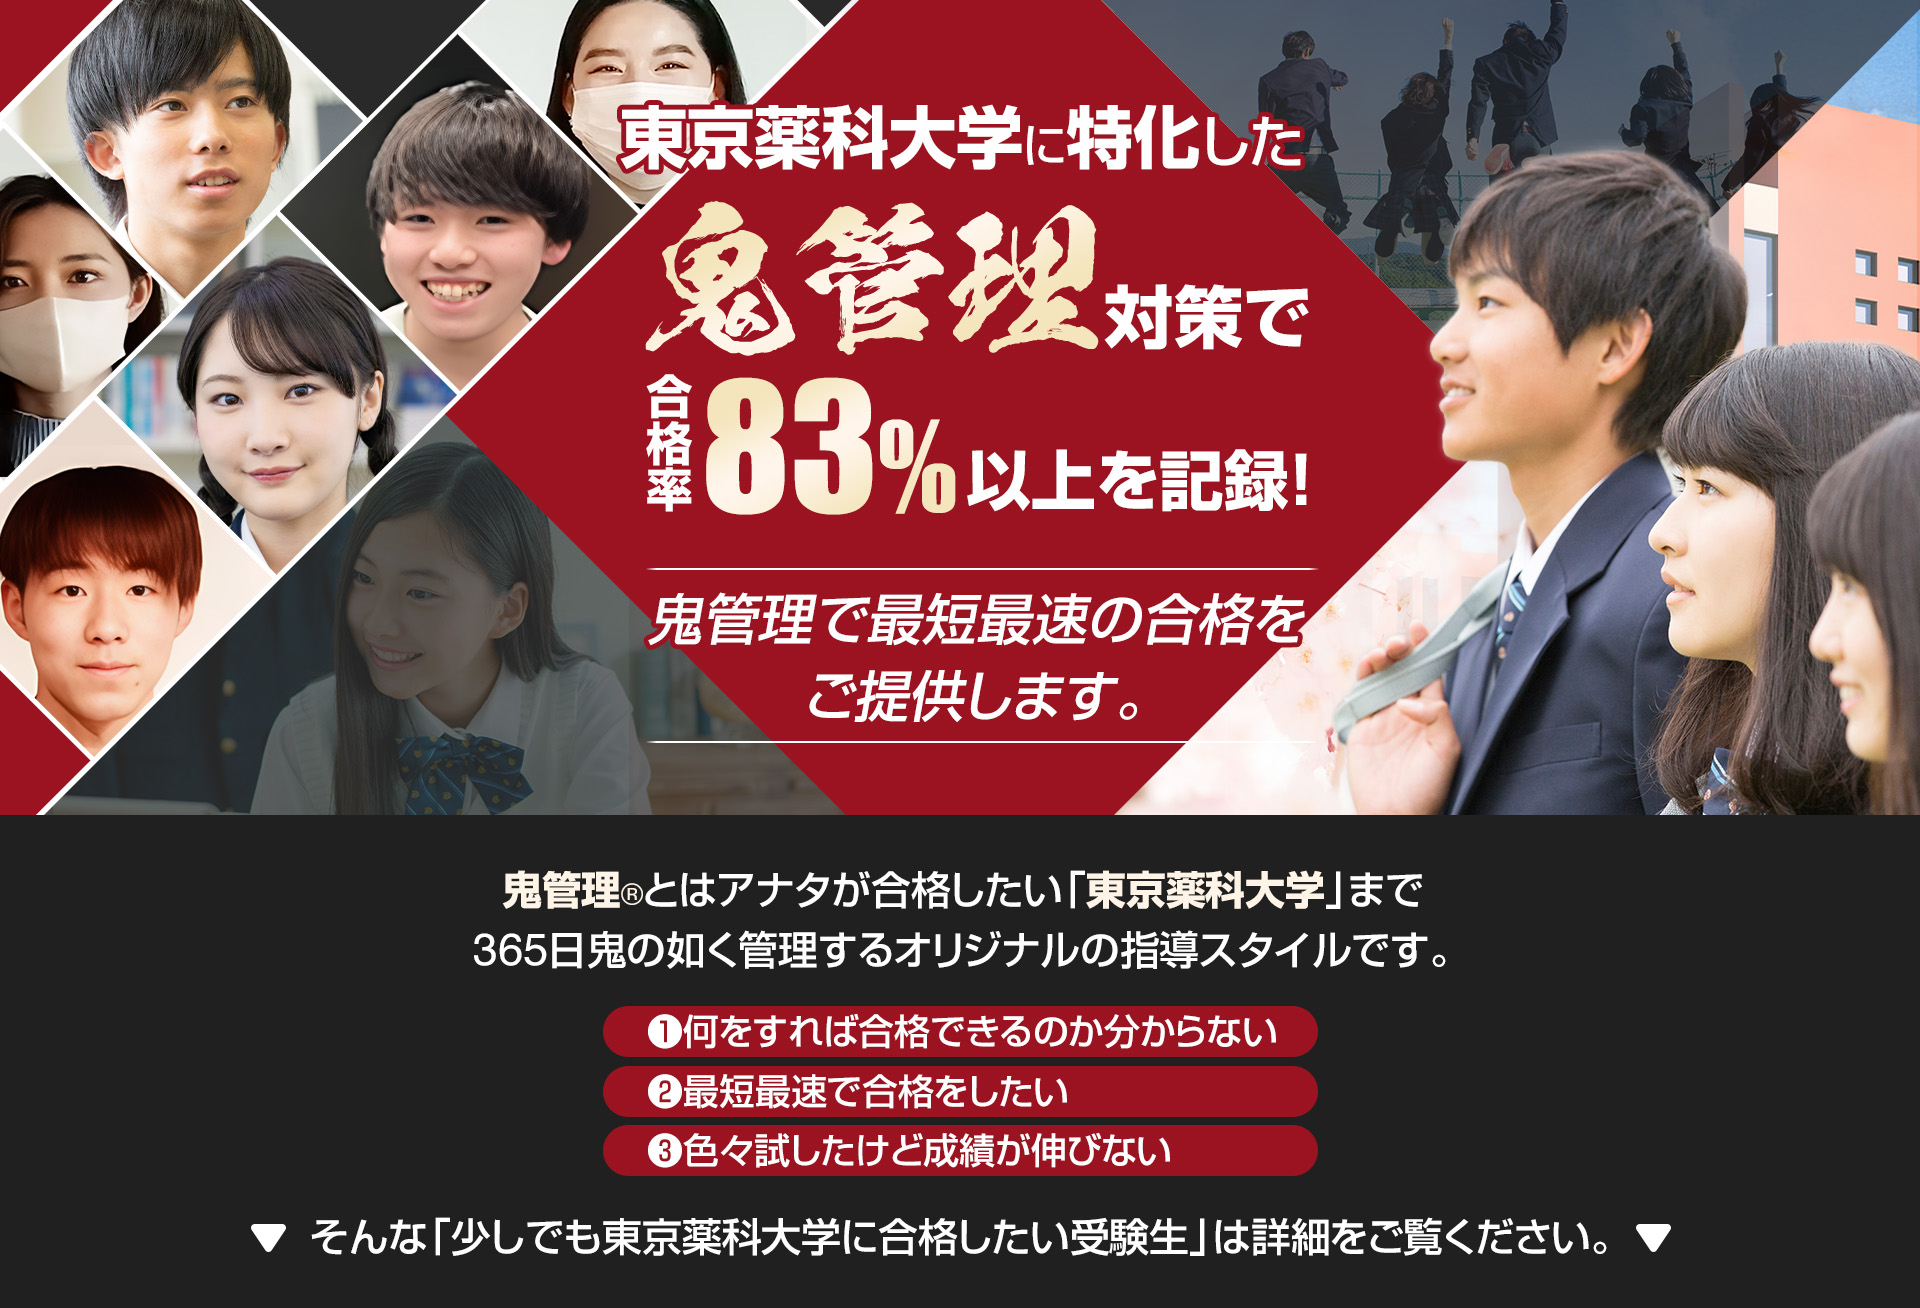 東京薬科大学に特化した鬼管理対策で合格率83％以上を記録。鬼管理でアナタが合格したい東京薬科大学への最短最速の合格を提供します。